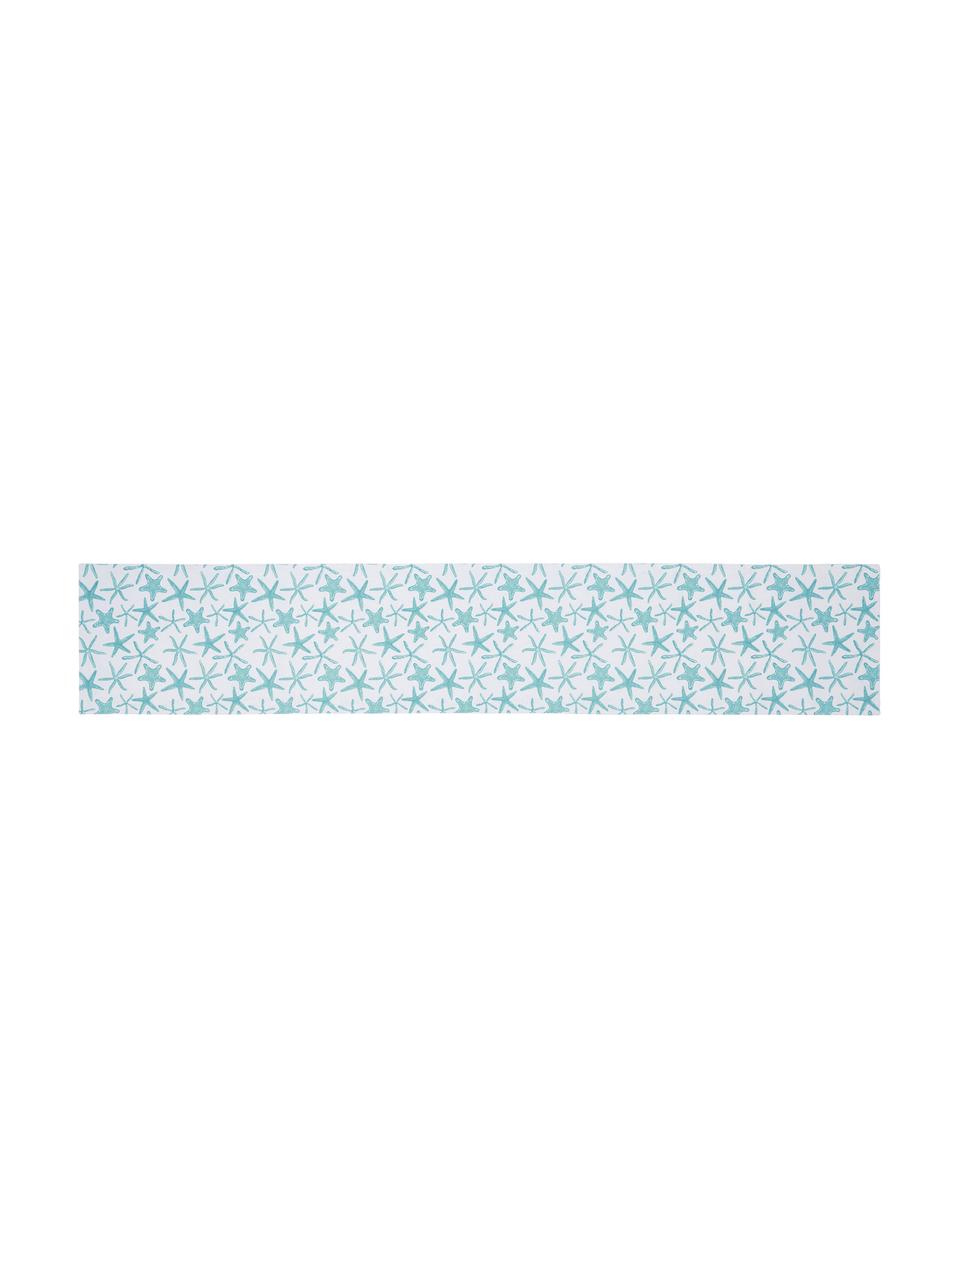 Dwustronny wodoodporny bieżnik Starbone, Poliester, Biały, niebieski, S 33 x D 178 cm